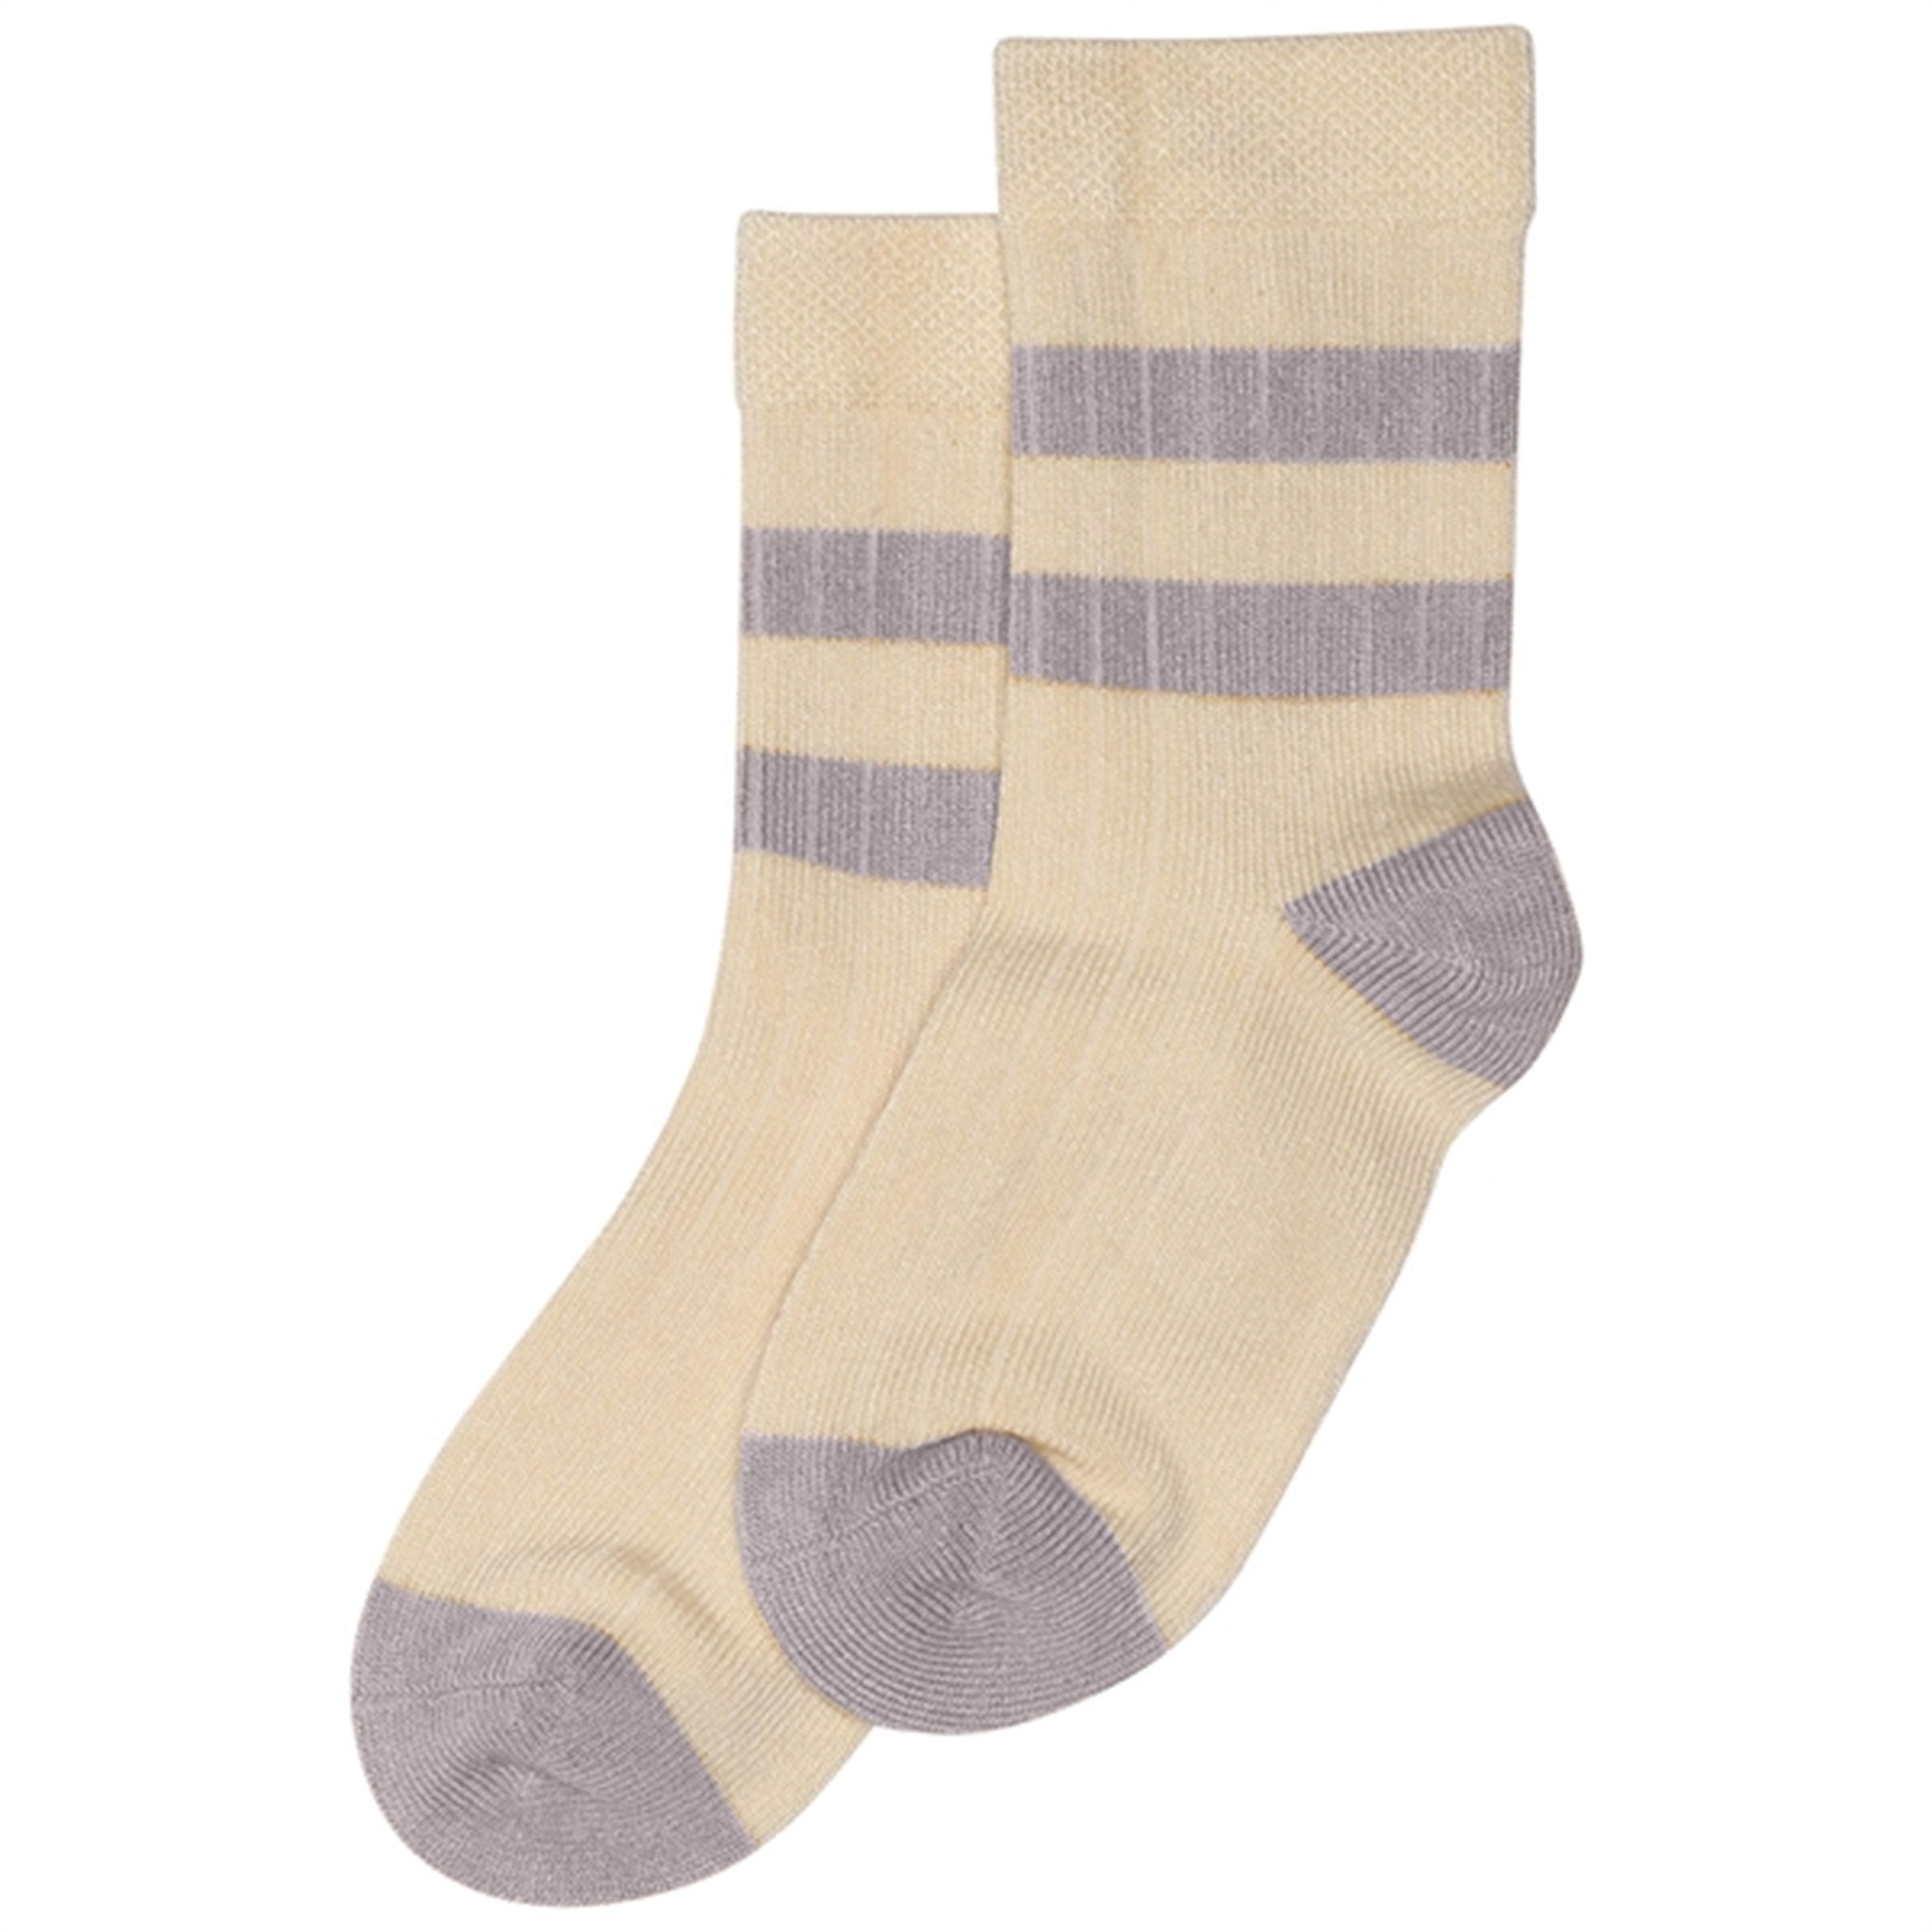 minipop® Dusty Lavender/Offwhite Bamboo Socks Sport